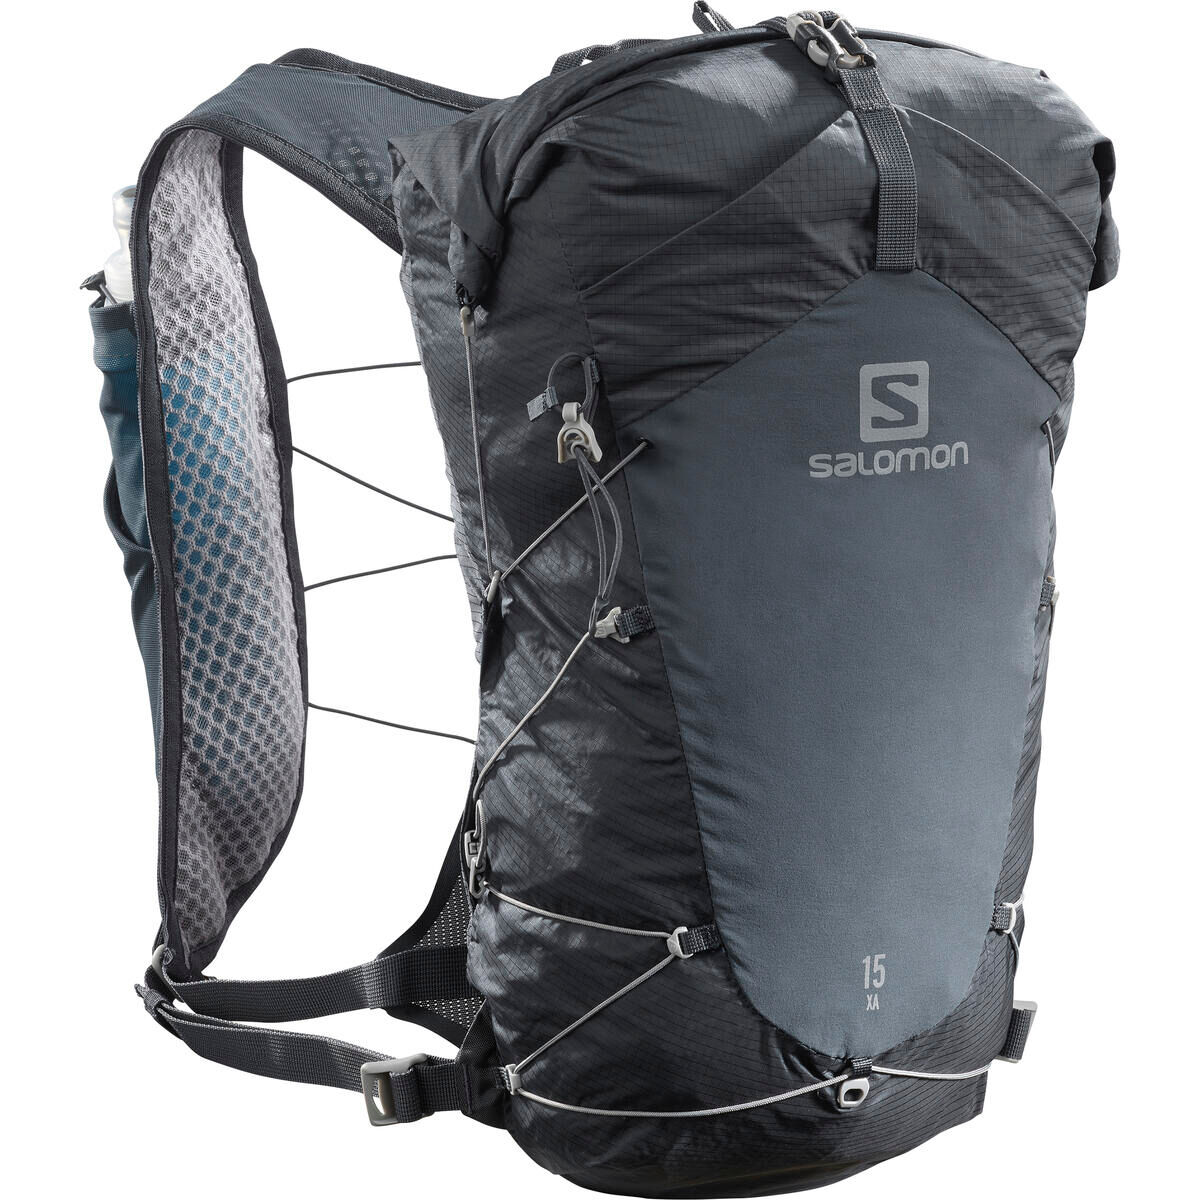 Salomon XA 15 - Hiking backpack